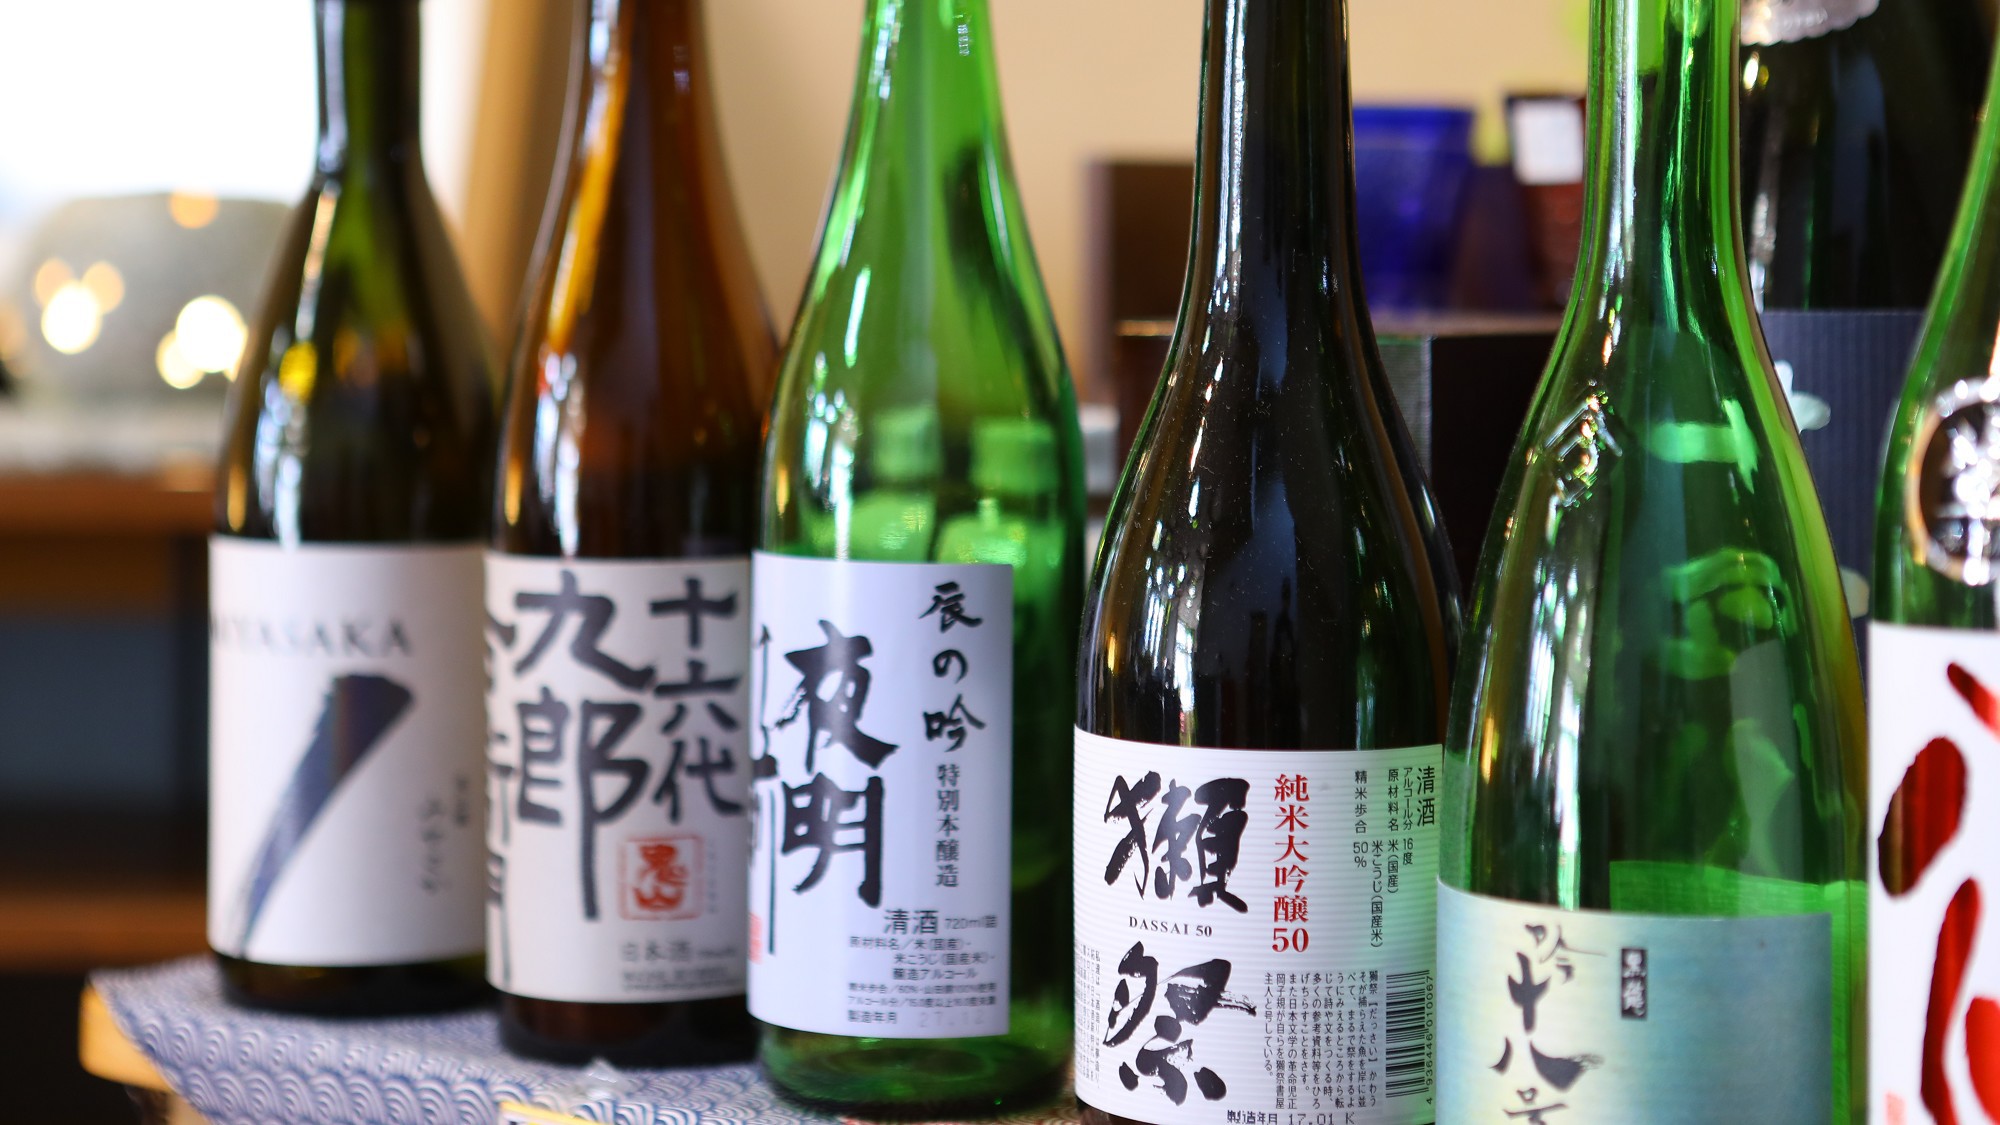 厳選された日本酒をご堪能ください